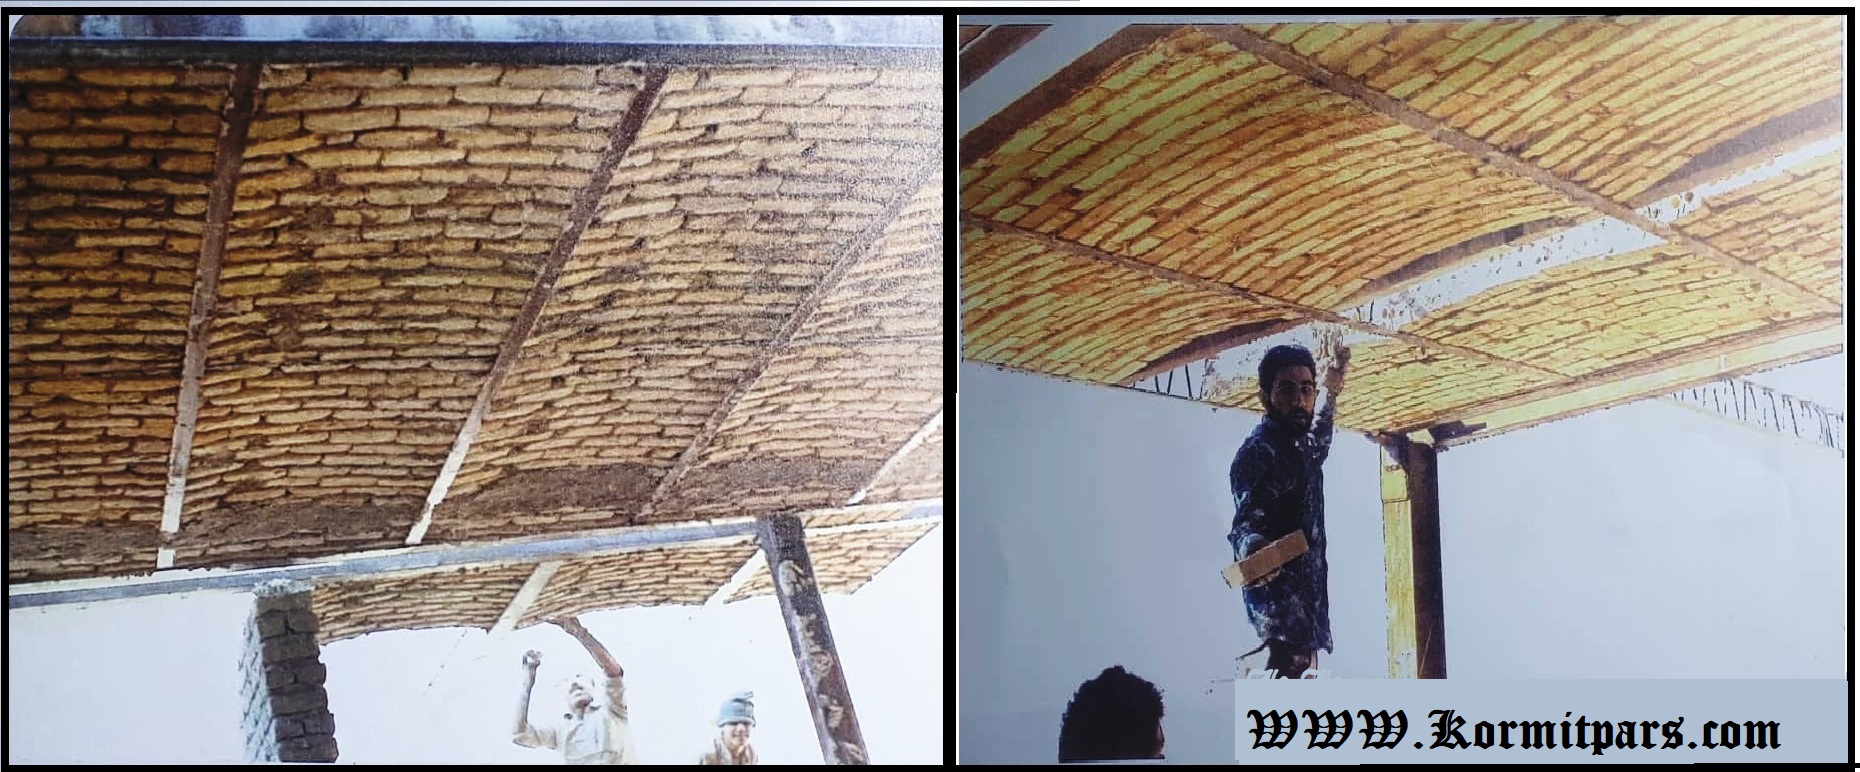 تاریخچه سقف در ایران